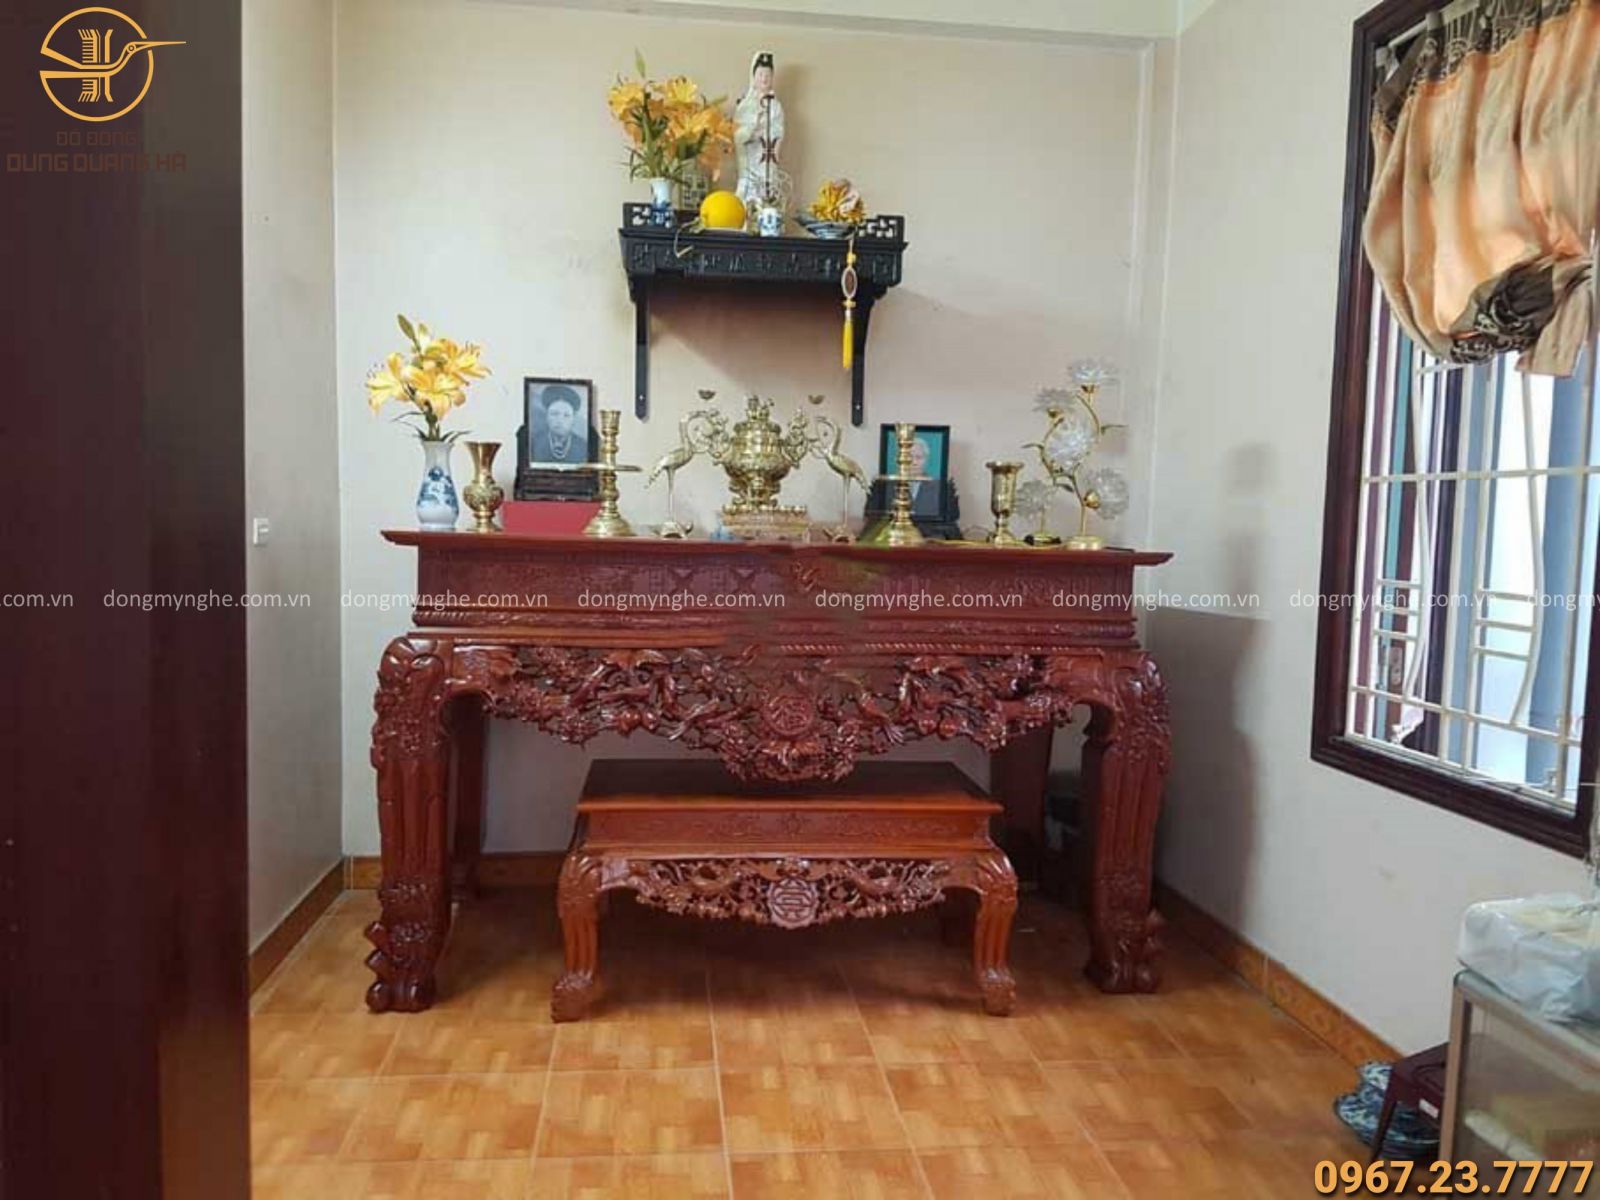 Cẩm nang cách trang trí bàn thờ Phật và Gia Tiên đẹp và ý nghĩa cho ngôi nhà của bạn